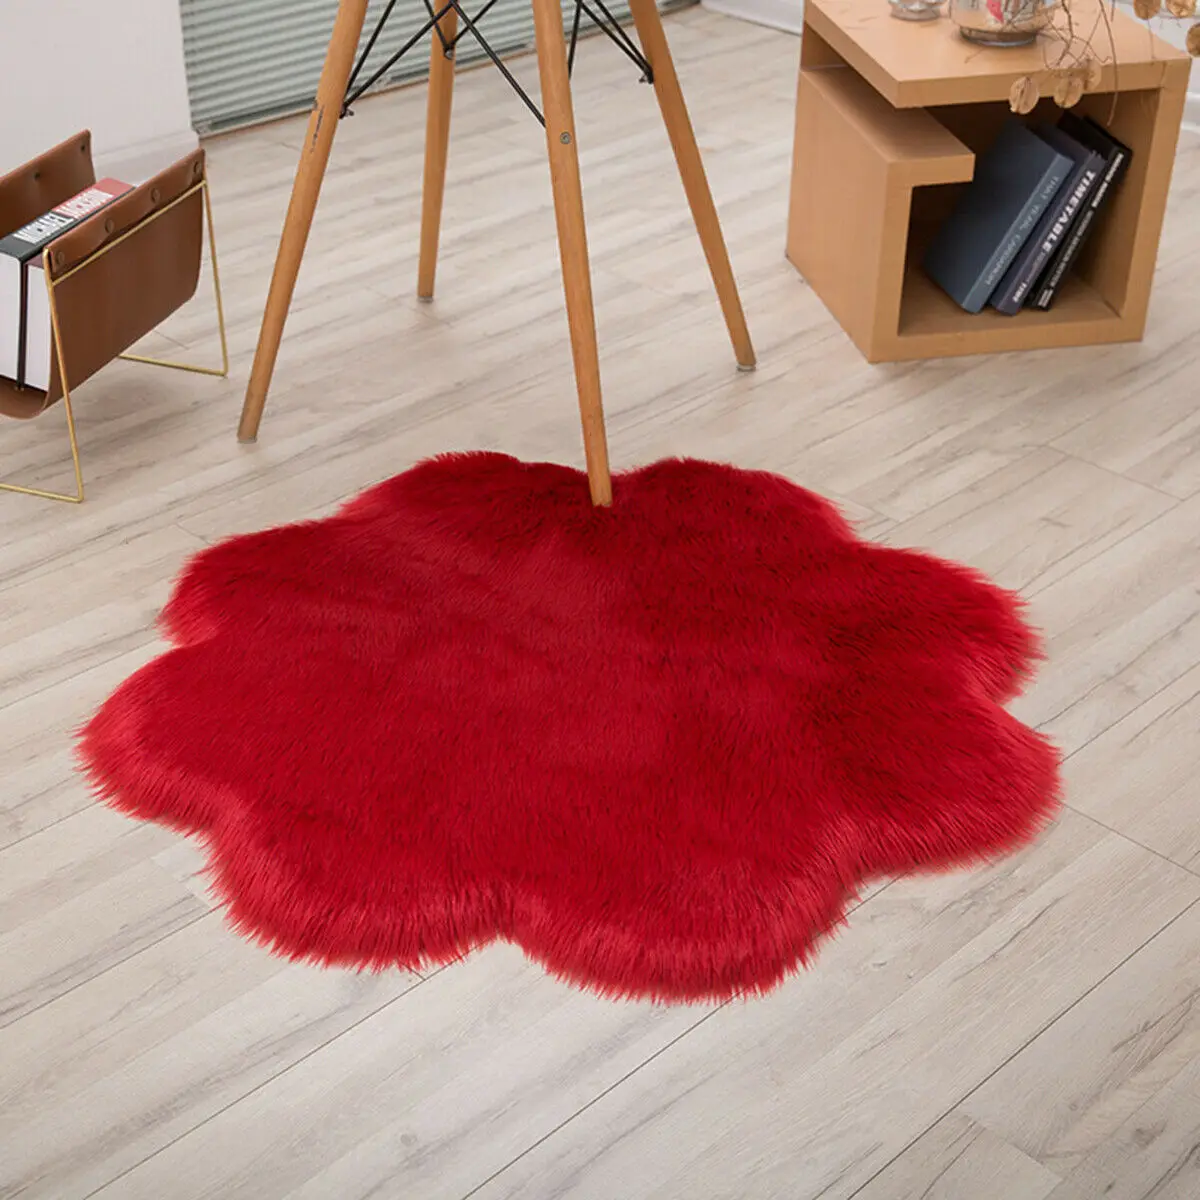 Пушистые коврики в форме цветка, противоскользящий ворсистый ковер для столовой, мягкий коврик для дома, спальни - Цвет: Красный